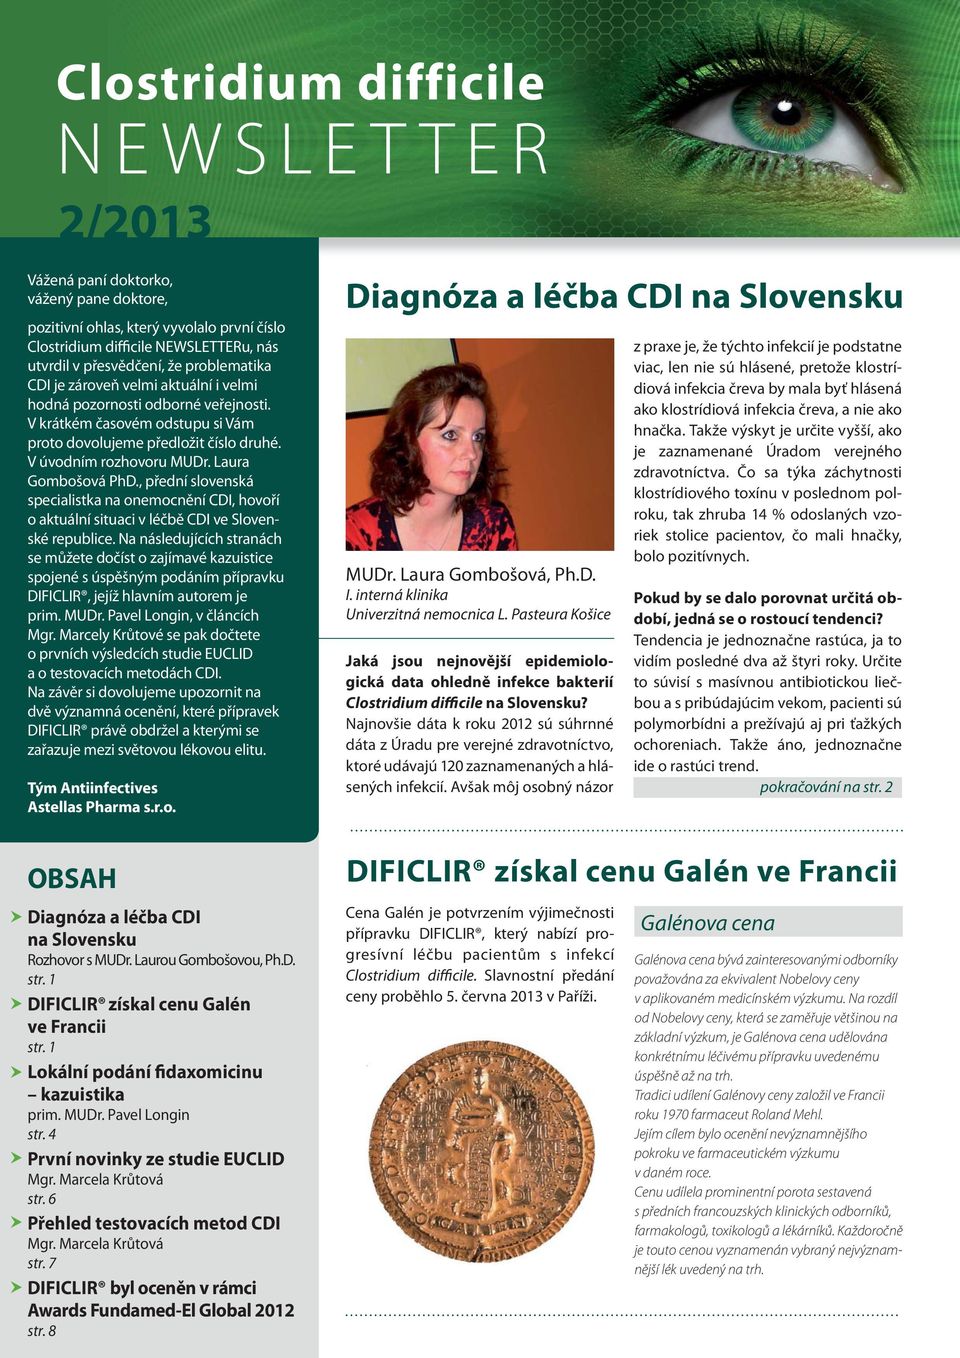 Laura Gombošová PhD., přední slovenská specialistka na onemocnění CDI, hovoří o aktuální situaci v léčbě CDI ve Slovenské republice.